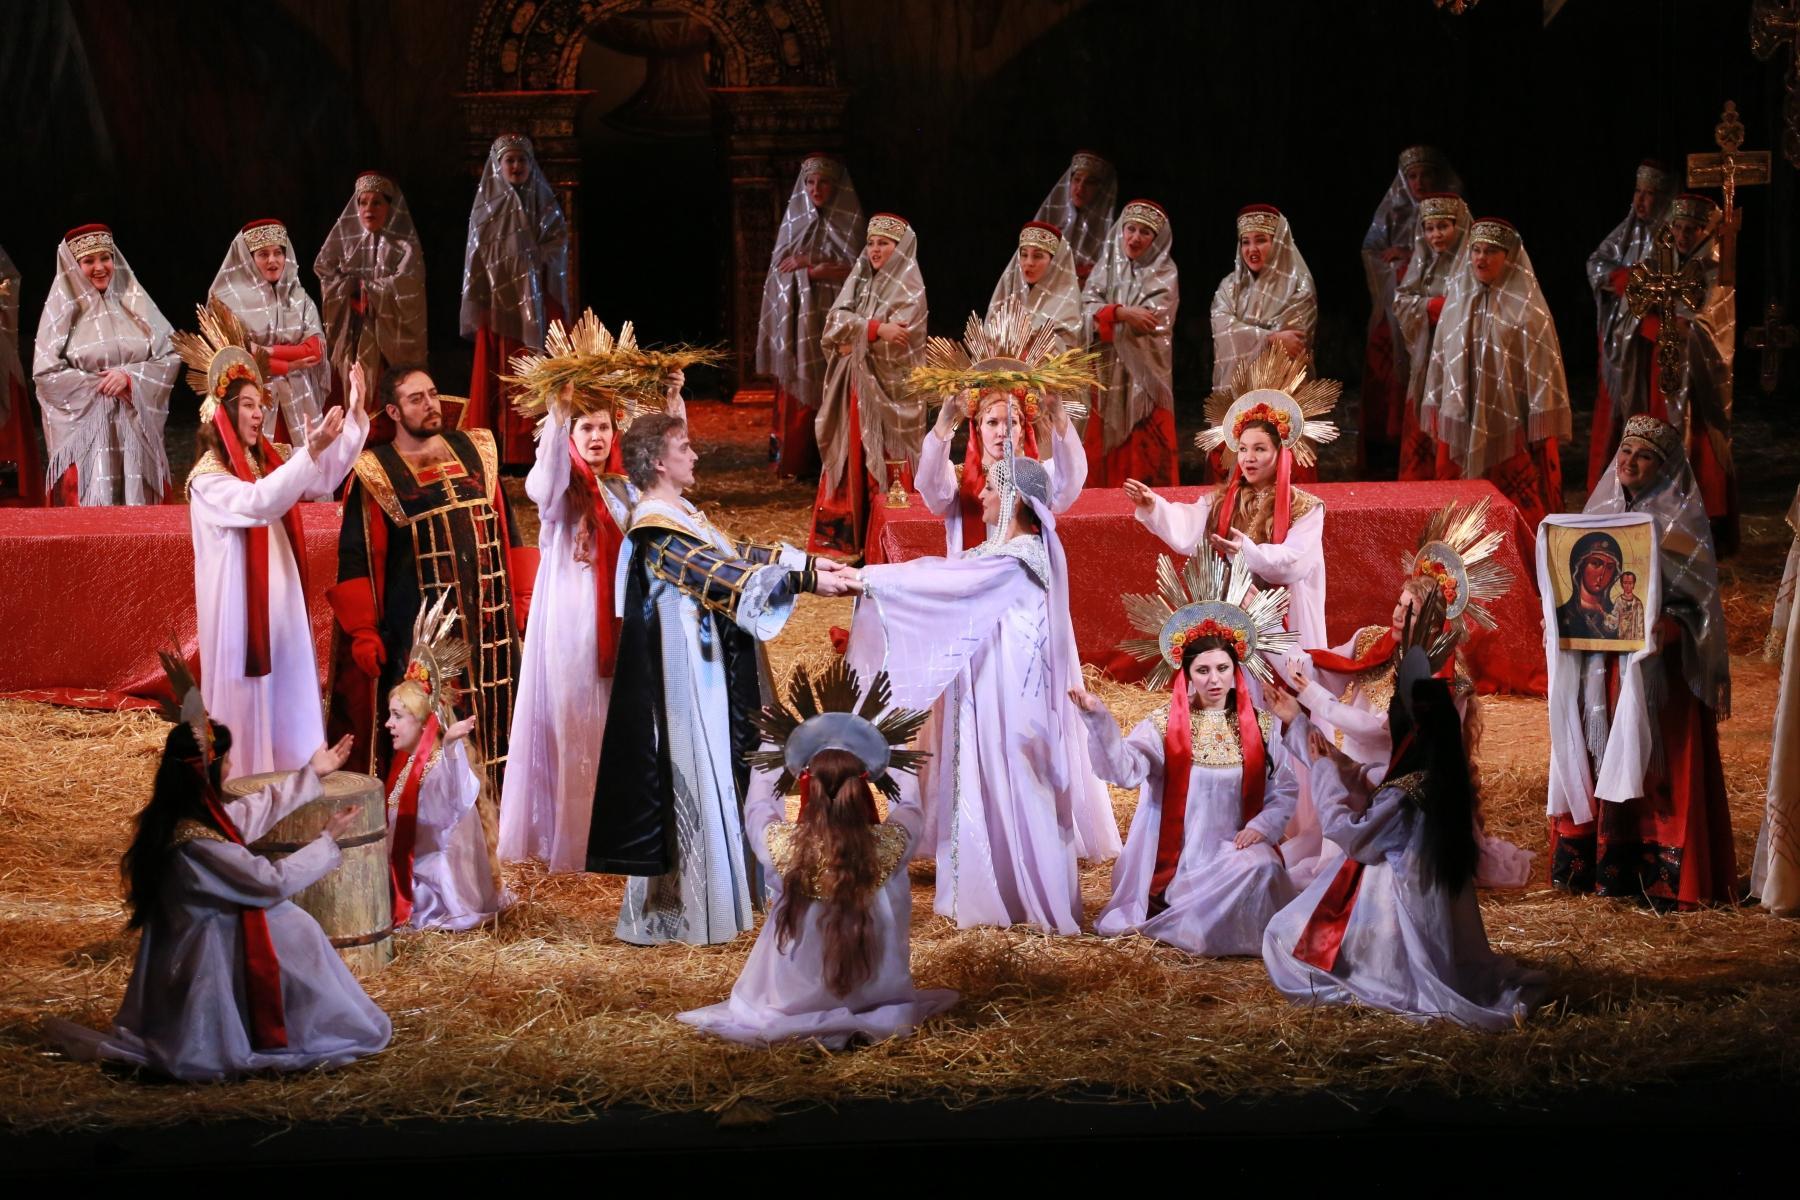 Опера царская невеста в большом театре